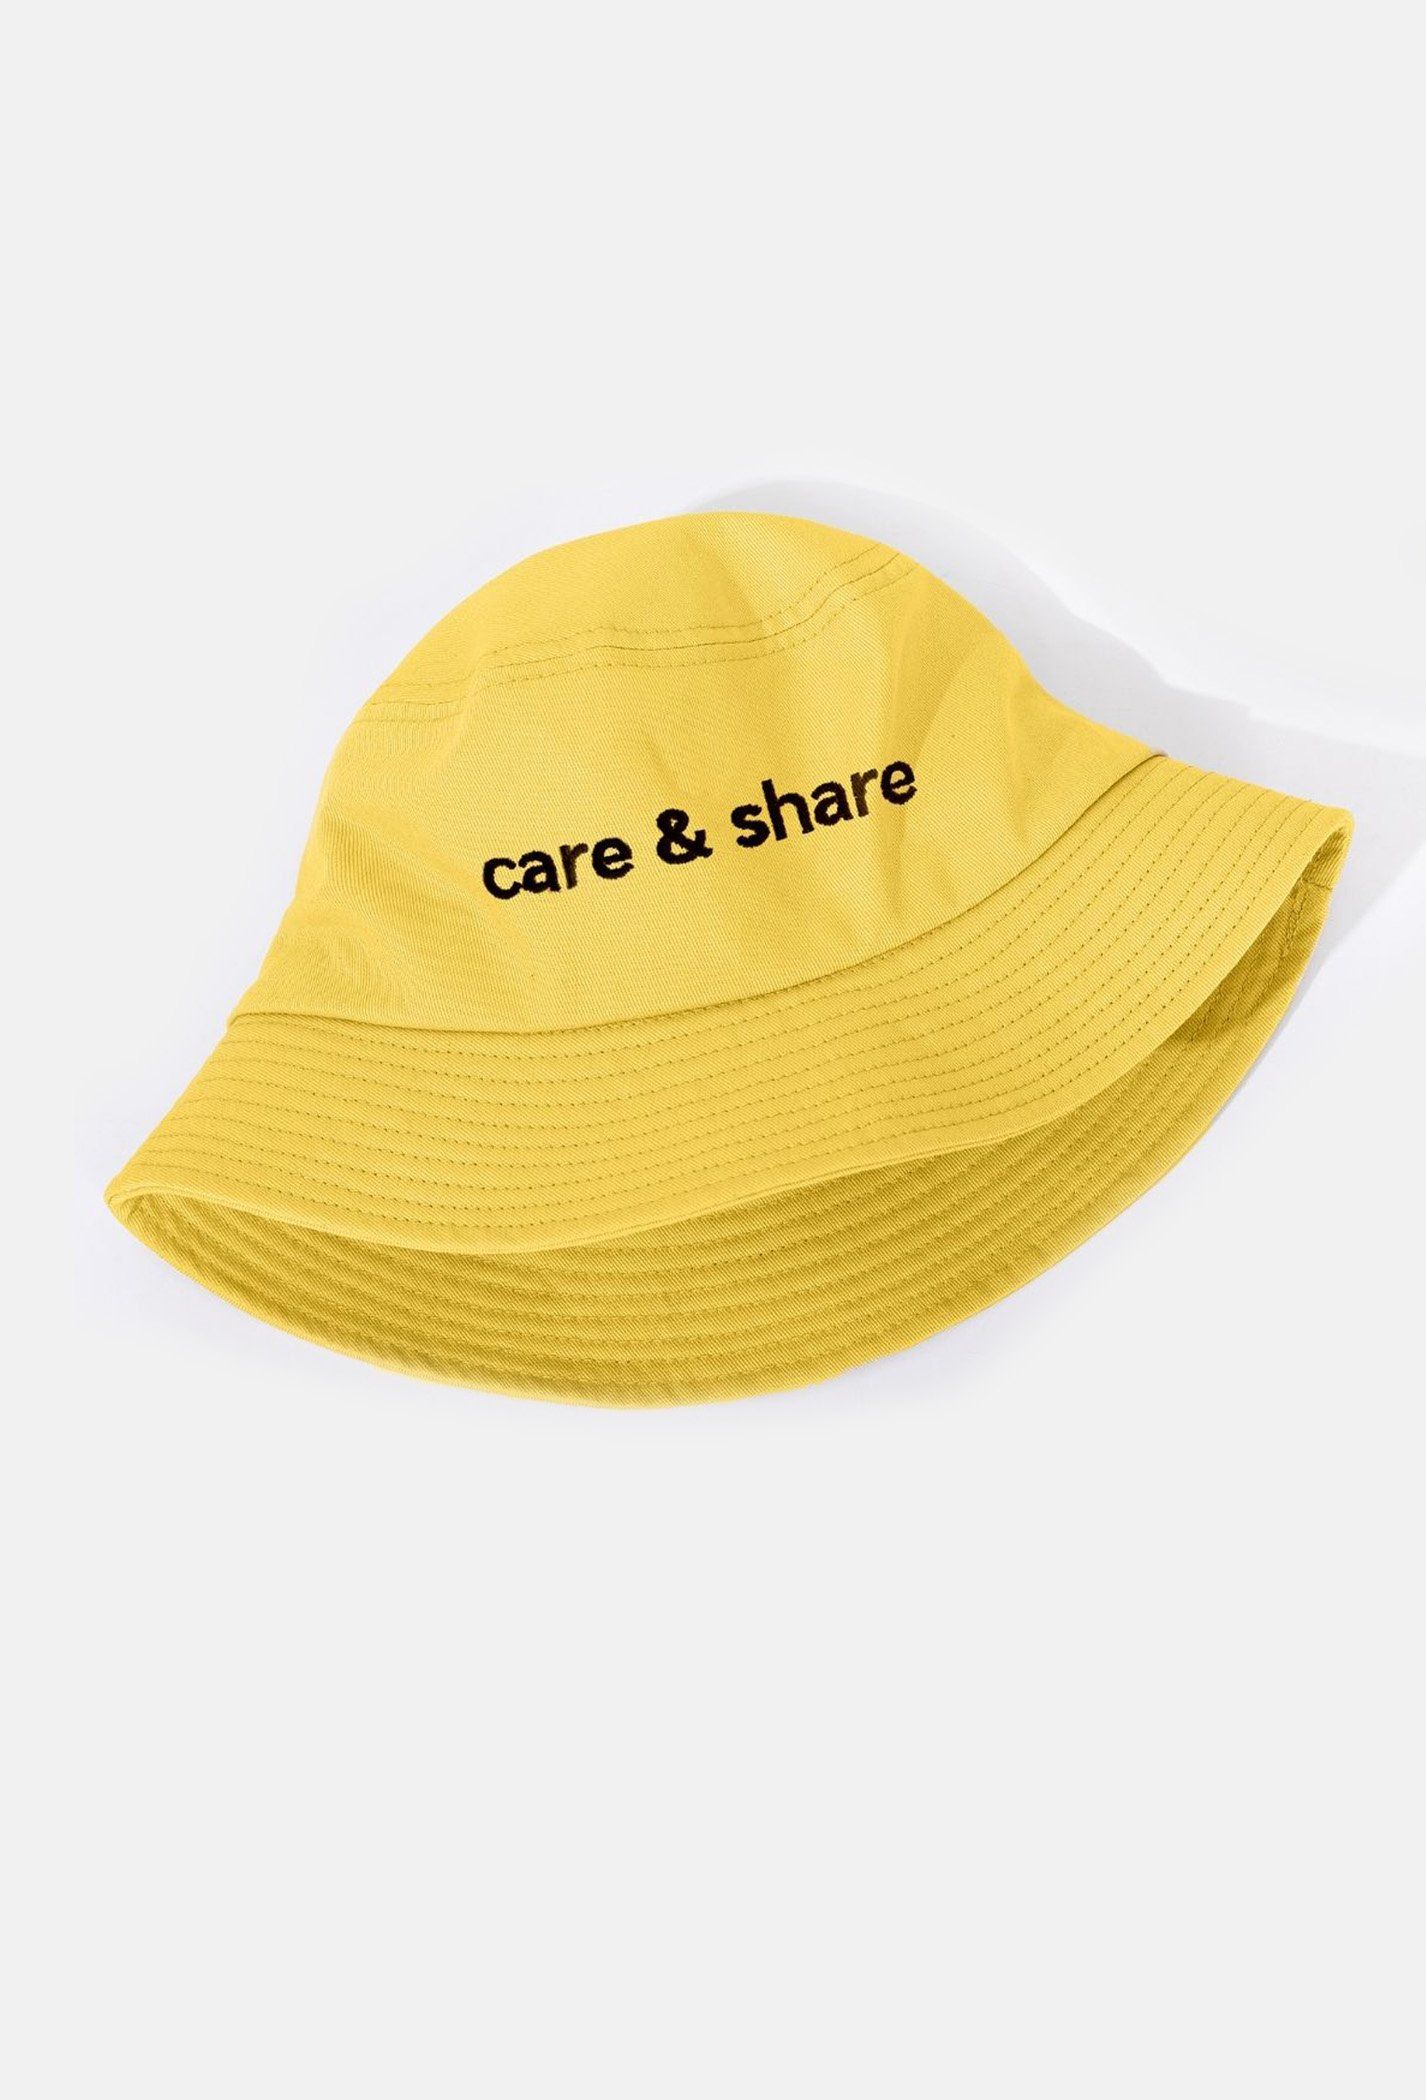 Mũ/Nón Bucket Hat thêu Care & Share Typo Vàng 1